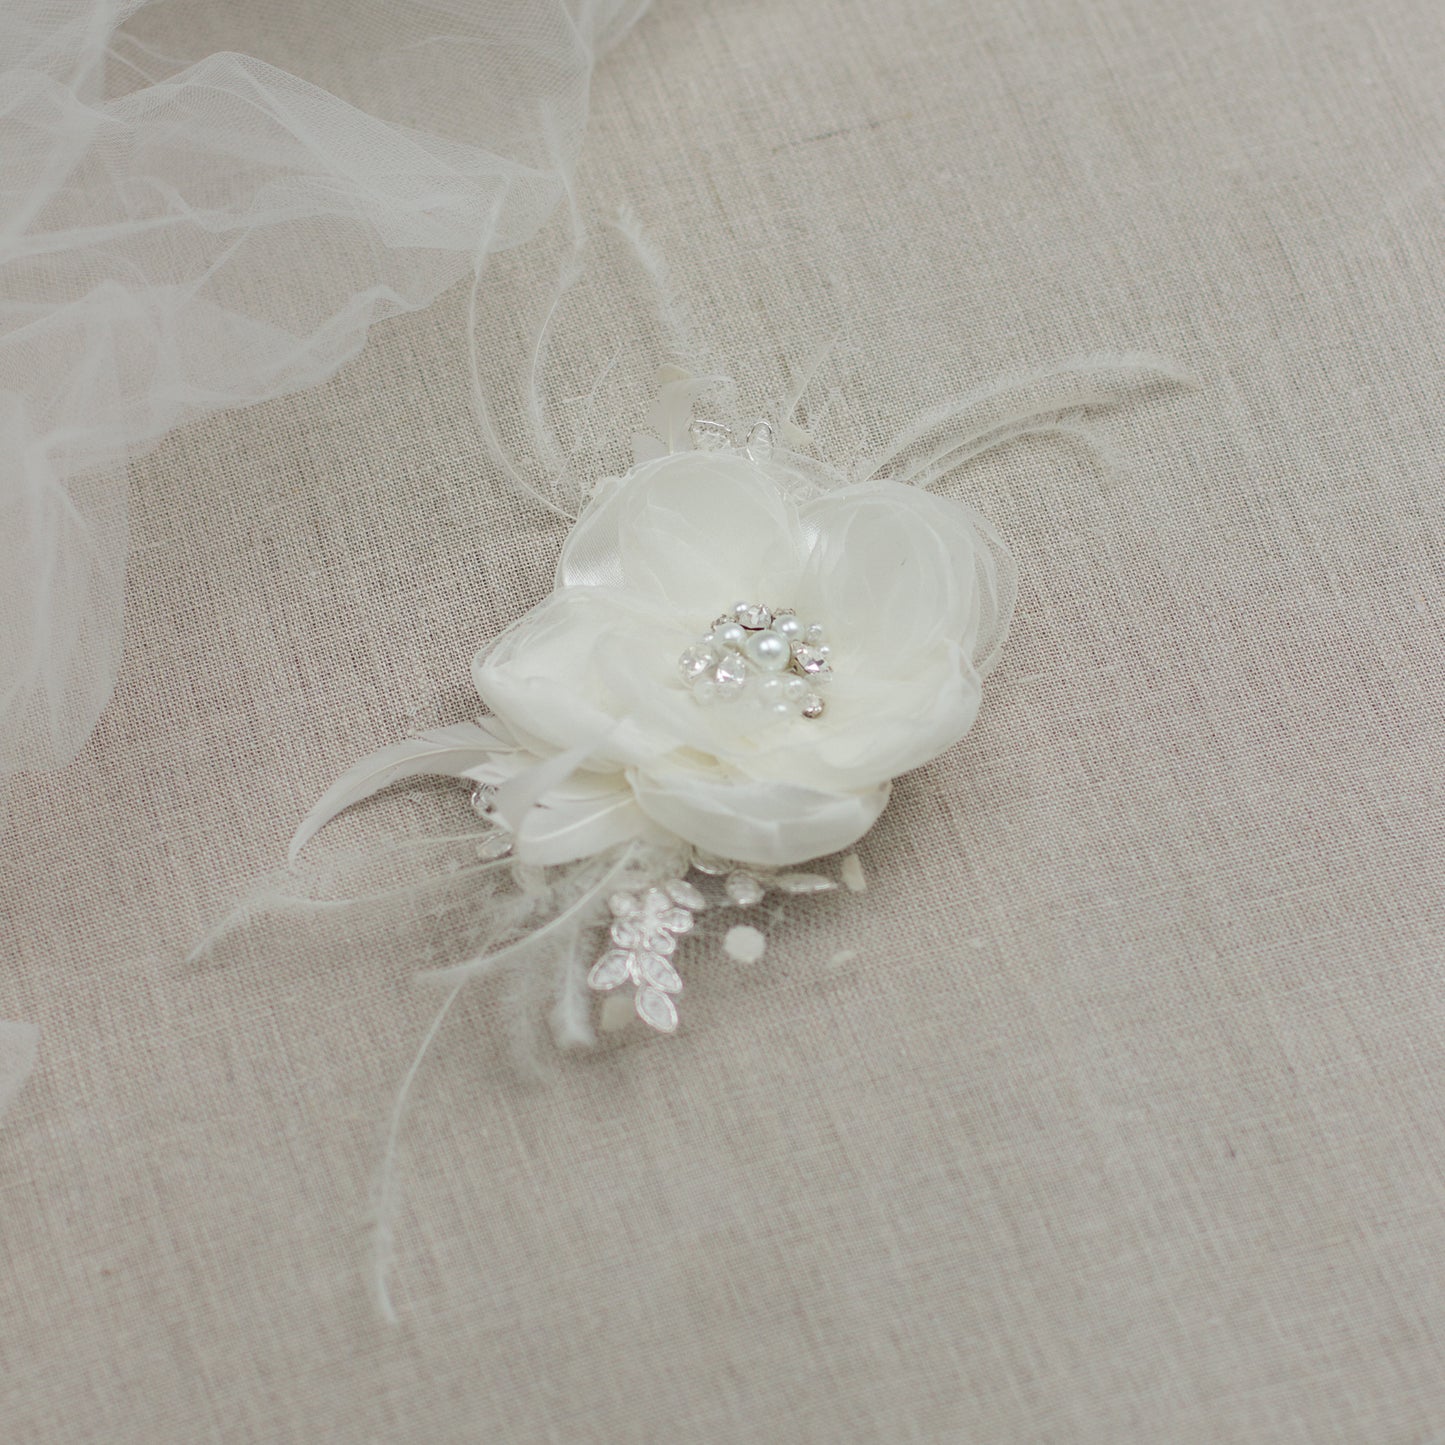 Ivory Wedding hair flower, Bridal hair flower, Bridal hair piece,Flower hair clip,Bride hair accessory, Flower fascinator, Wedding hairpiece